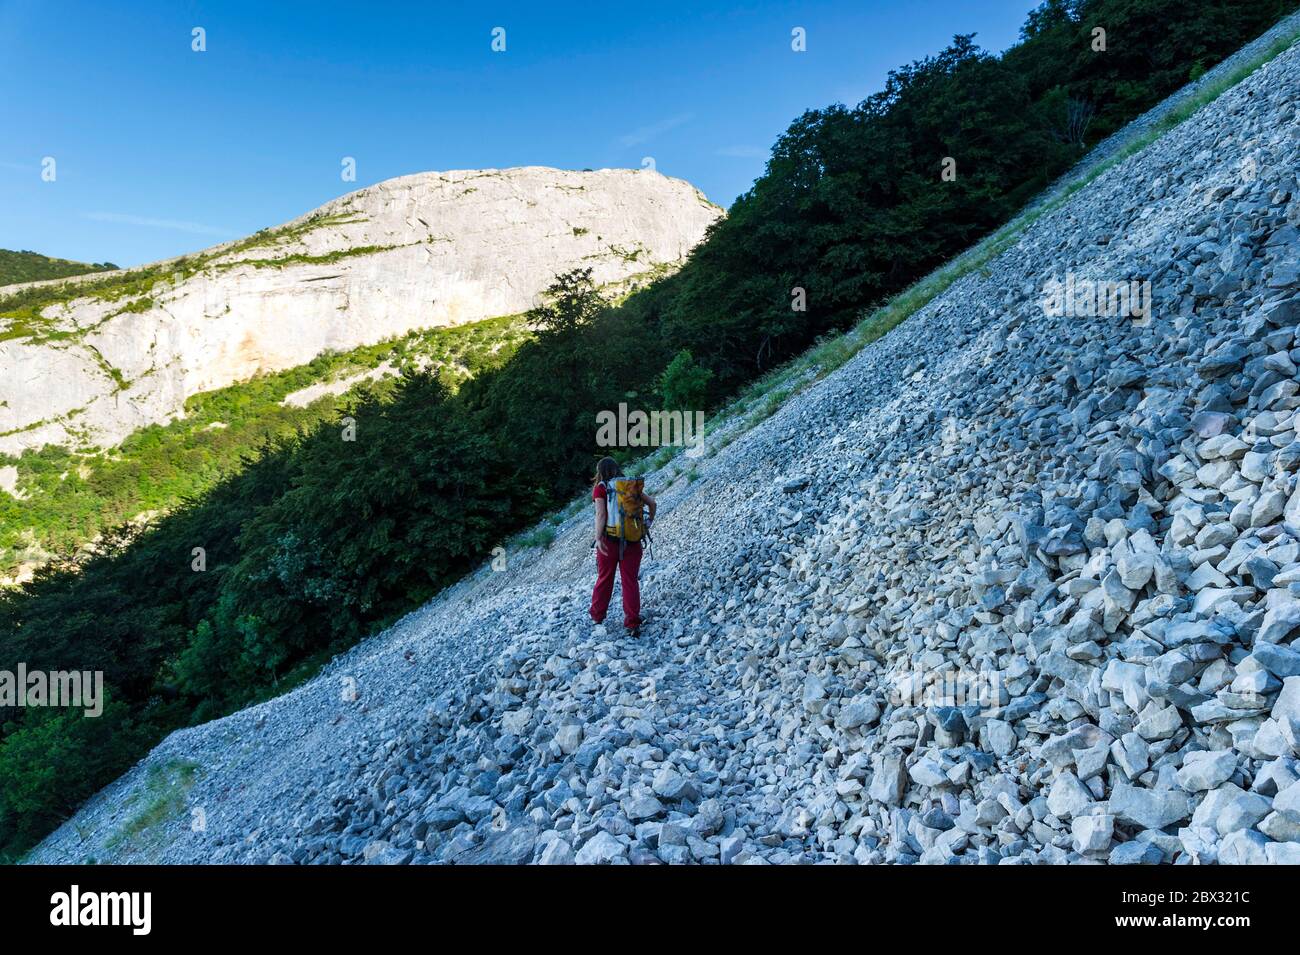 France, Drôme (26), Vercors Regional Nature Park, Rousset-en-Vercors, Montagne de Nève, hiker going up towards the Col de Chirounne (1416m) Stock Photo